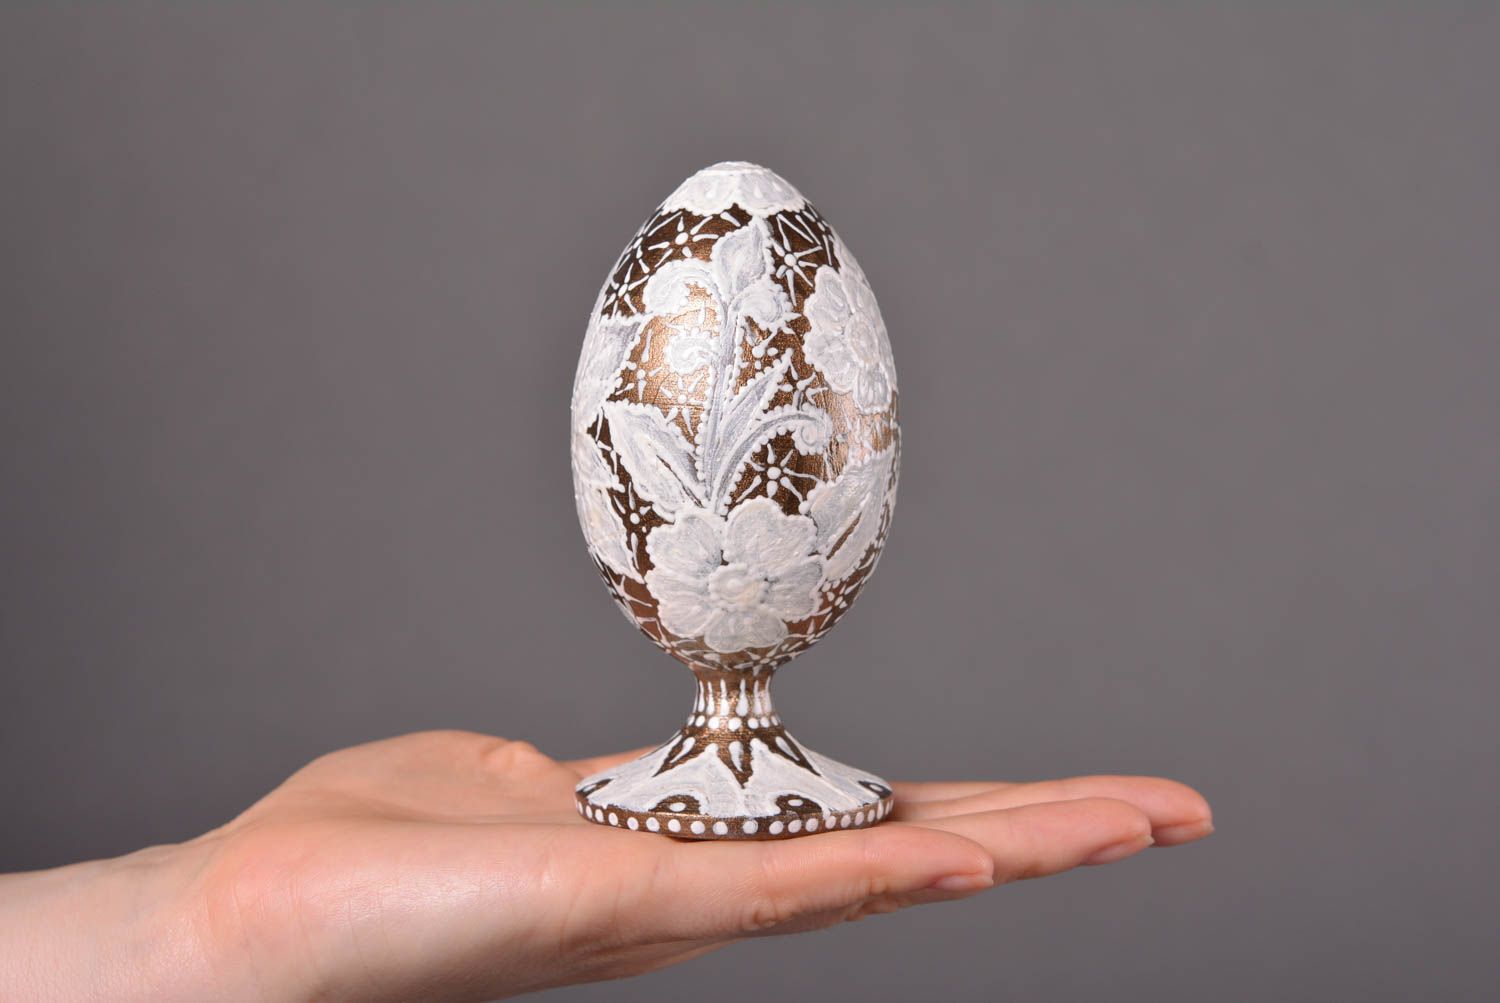 Handmade Easter Egg unusual eggs designer egg for interior decor ideas photo 4